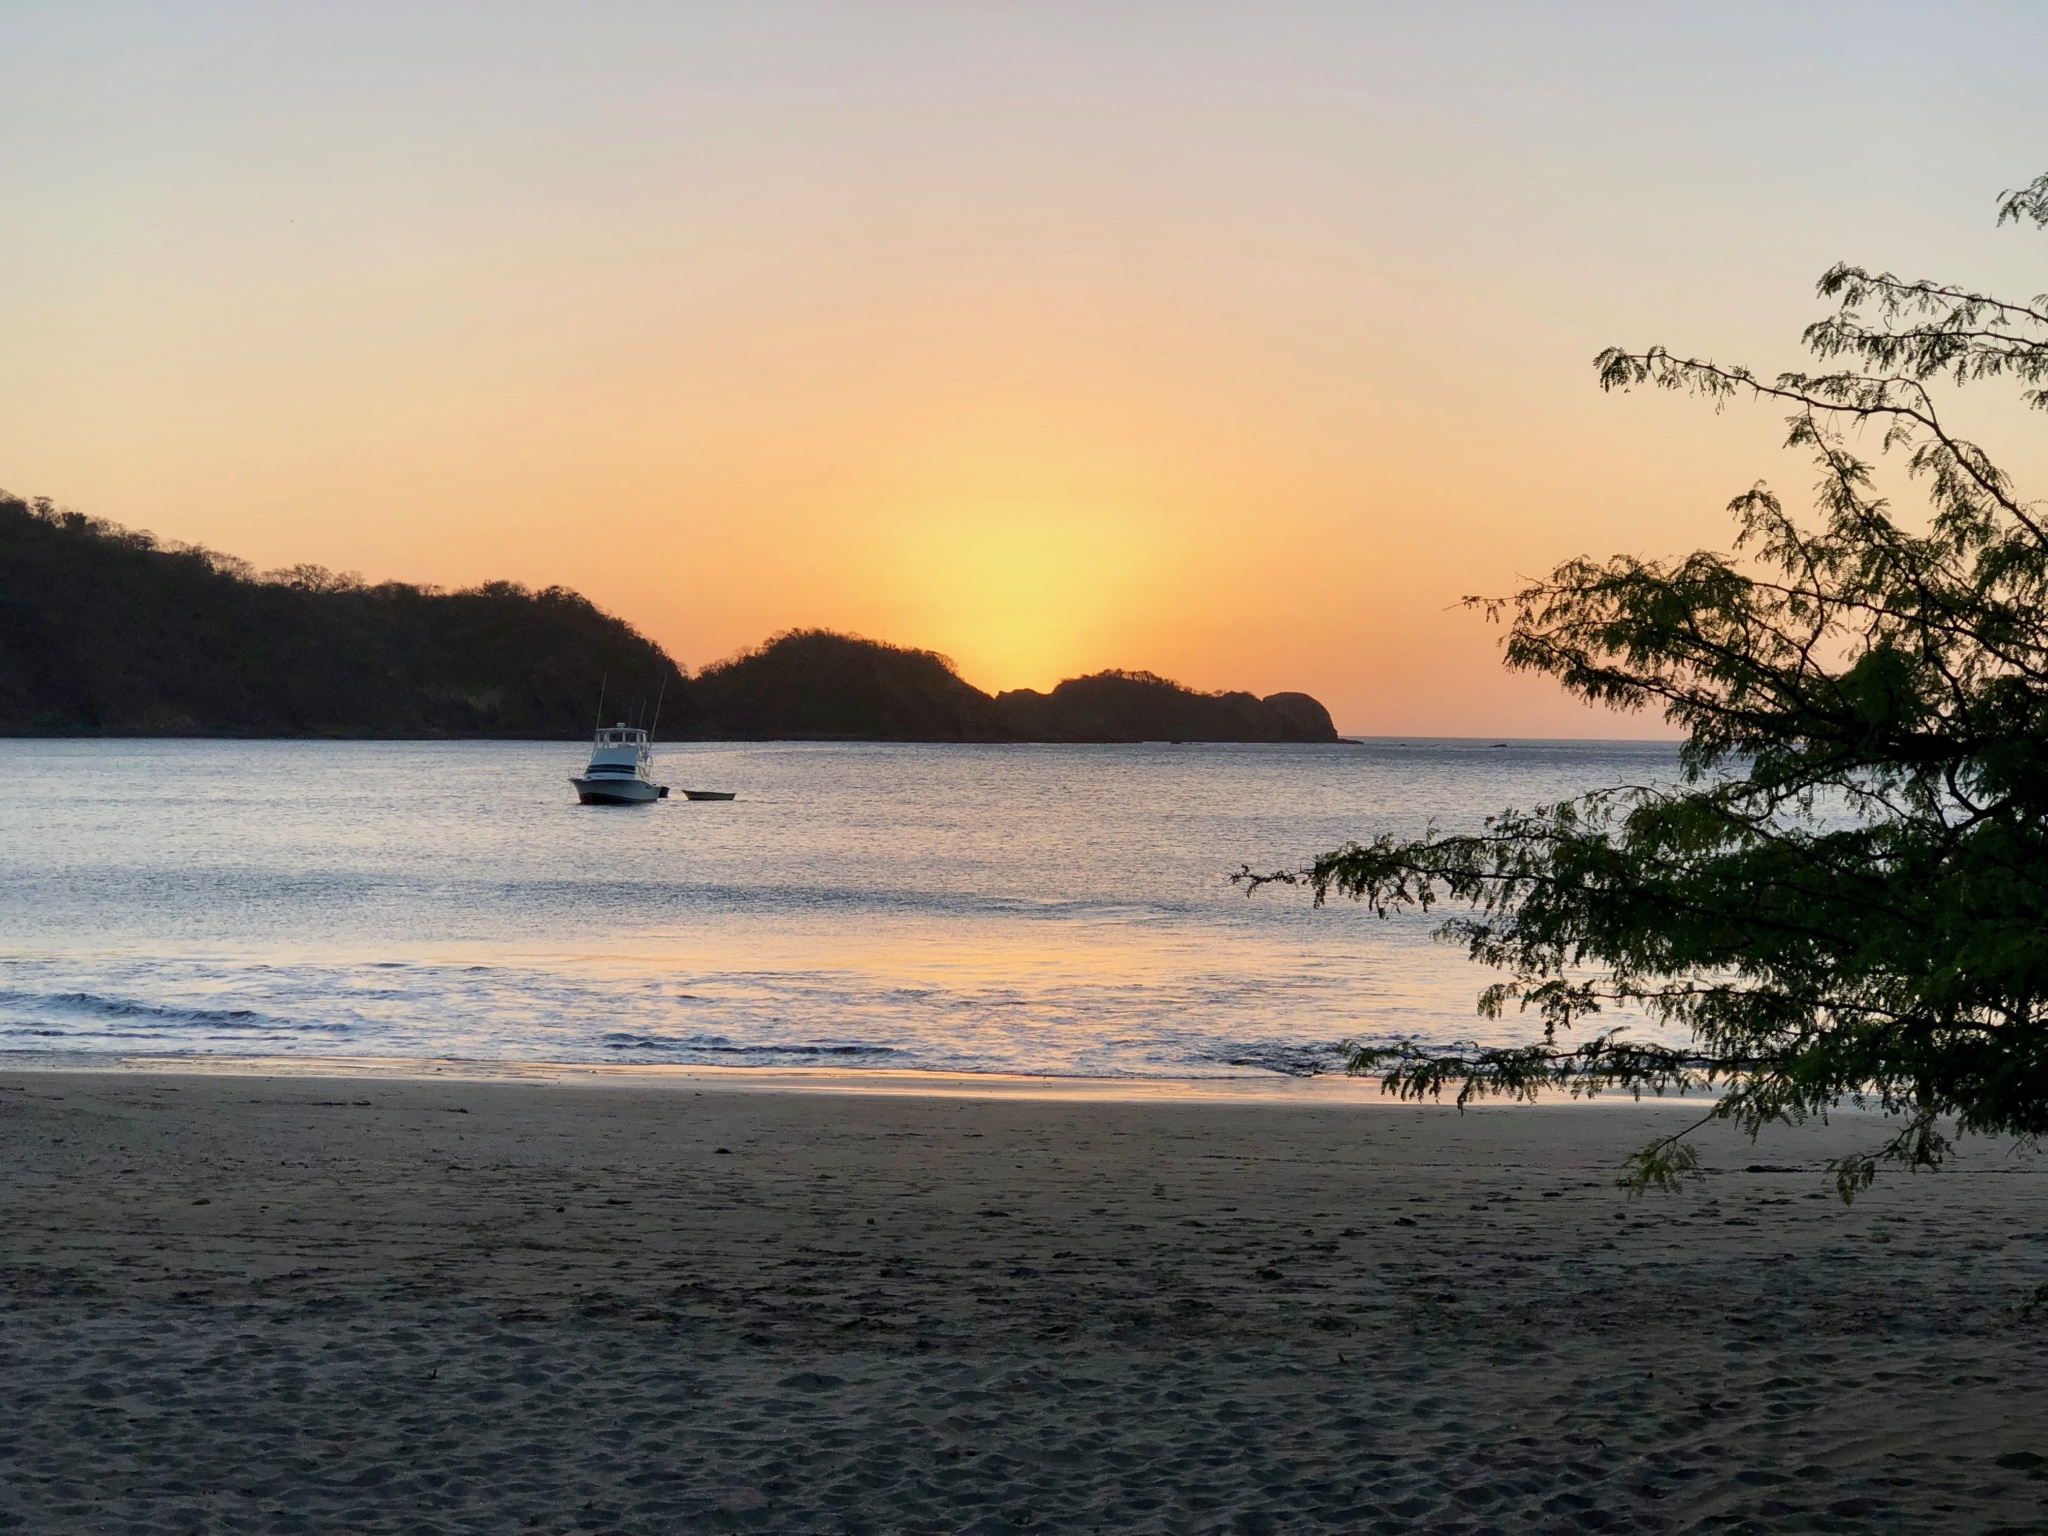 Sunset at El Jobo beach at Dreams Las Mareas Costa Rica